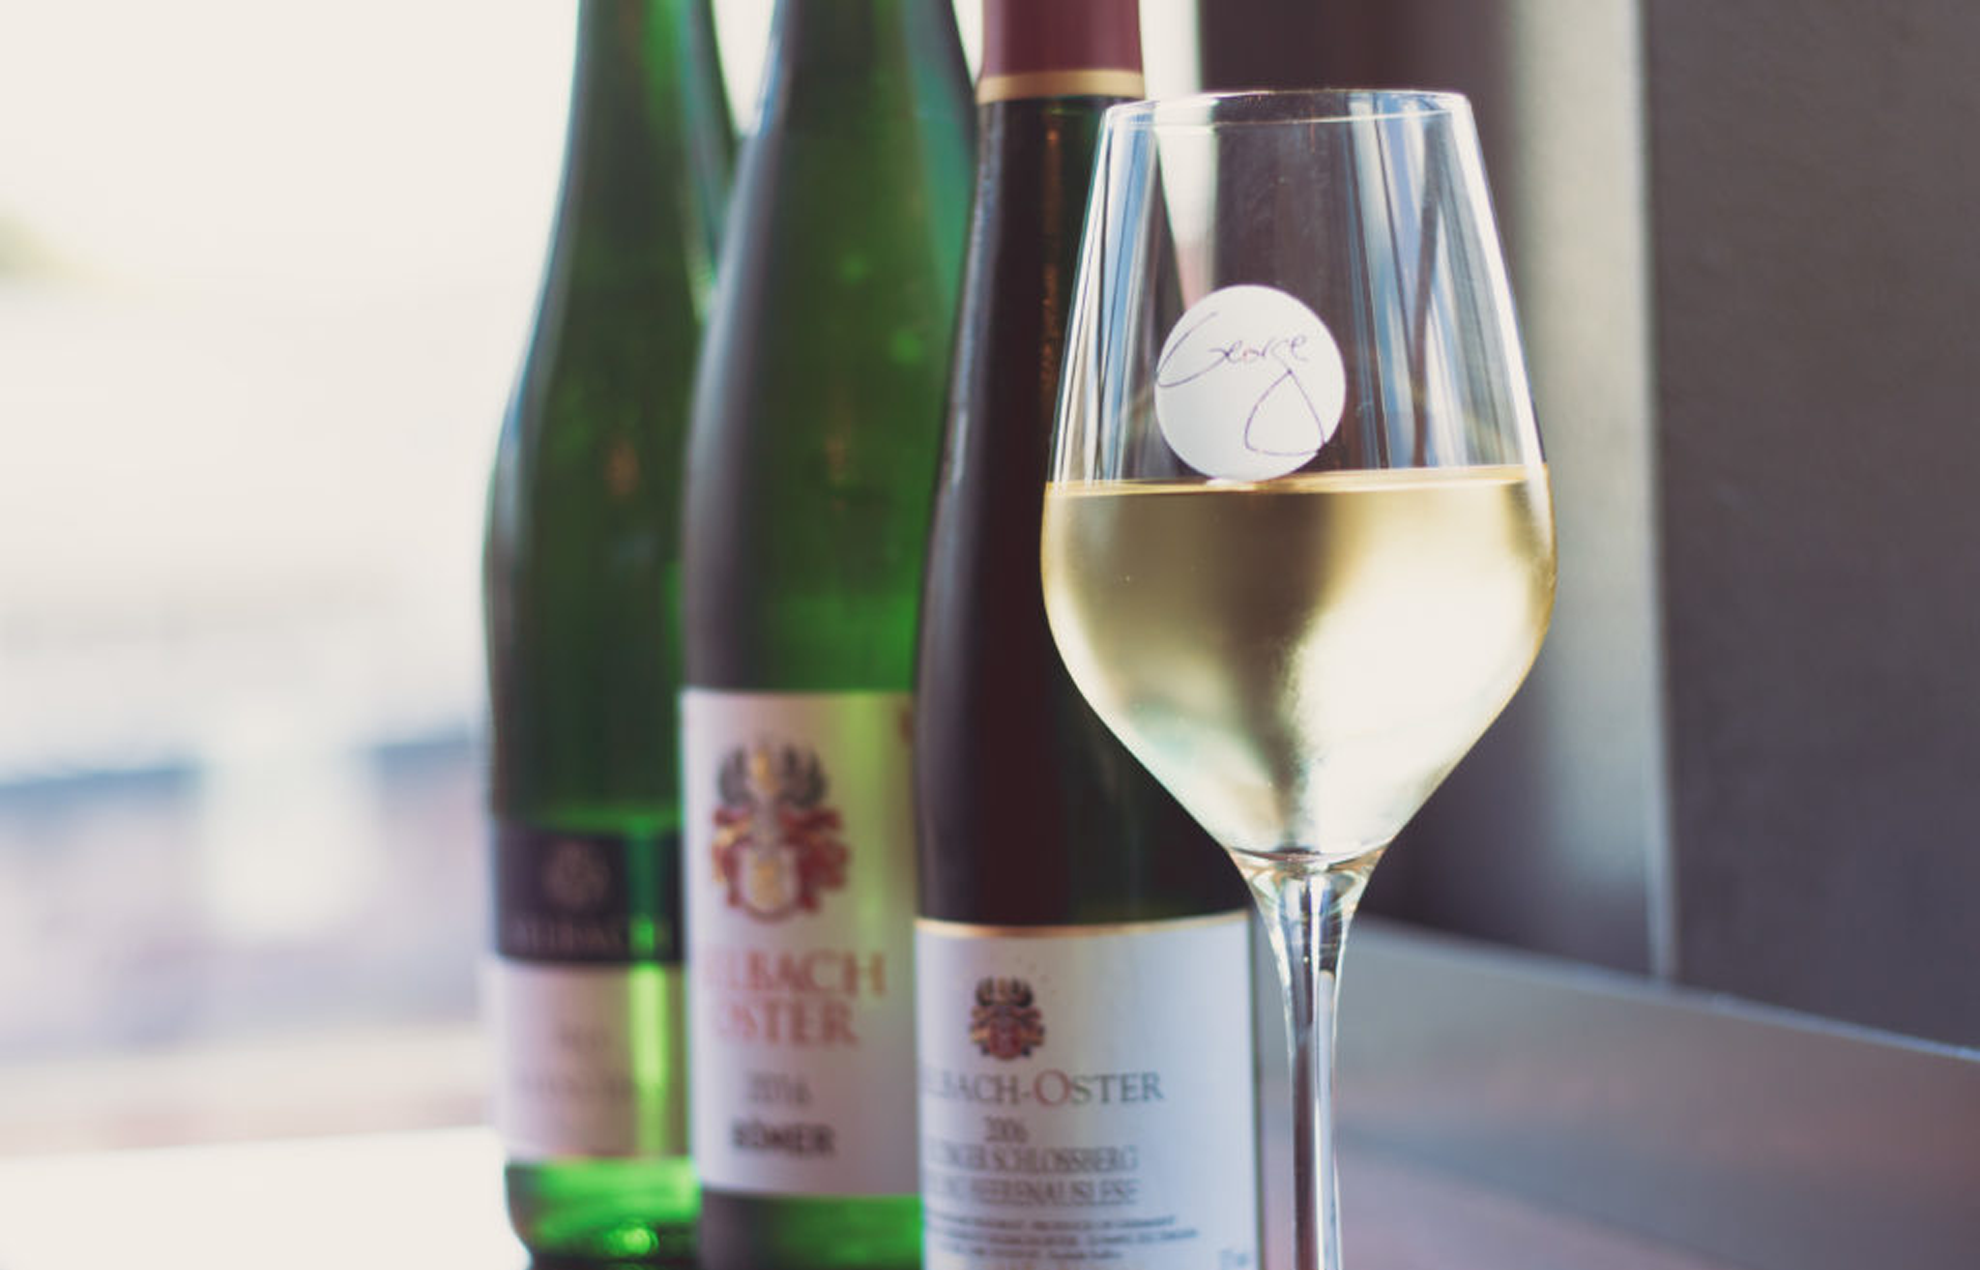 Un bicchiere di vino di George Miliotes pieno di vino bianco e bottiglie di vino sullo sfondo.
